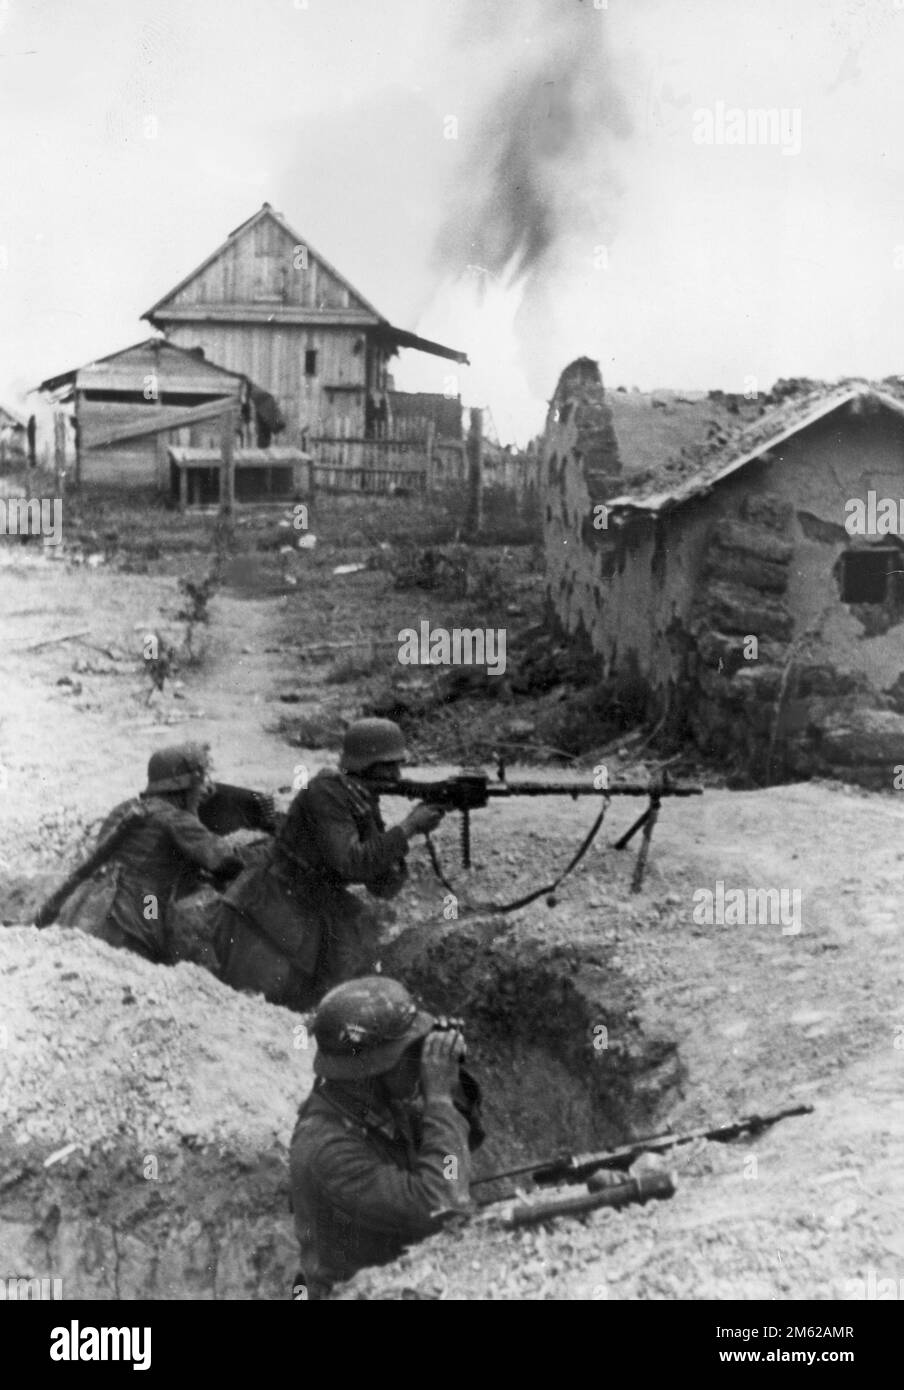 Trois soldats allemands (dont un avec un fusil MG-34) dans une tranchée au milieu des bâtiments du village près de Stalingrad pendant la bataille de Stalingrad en WW2 Banque D'Images